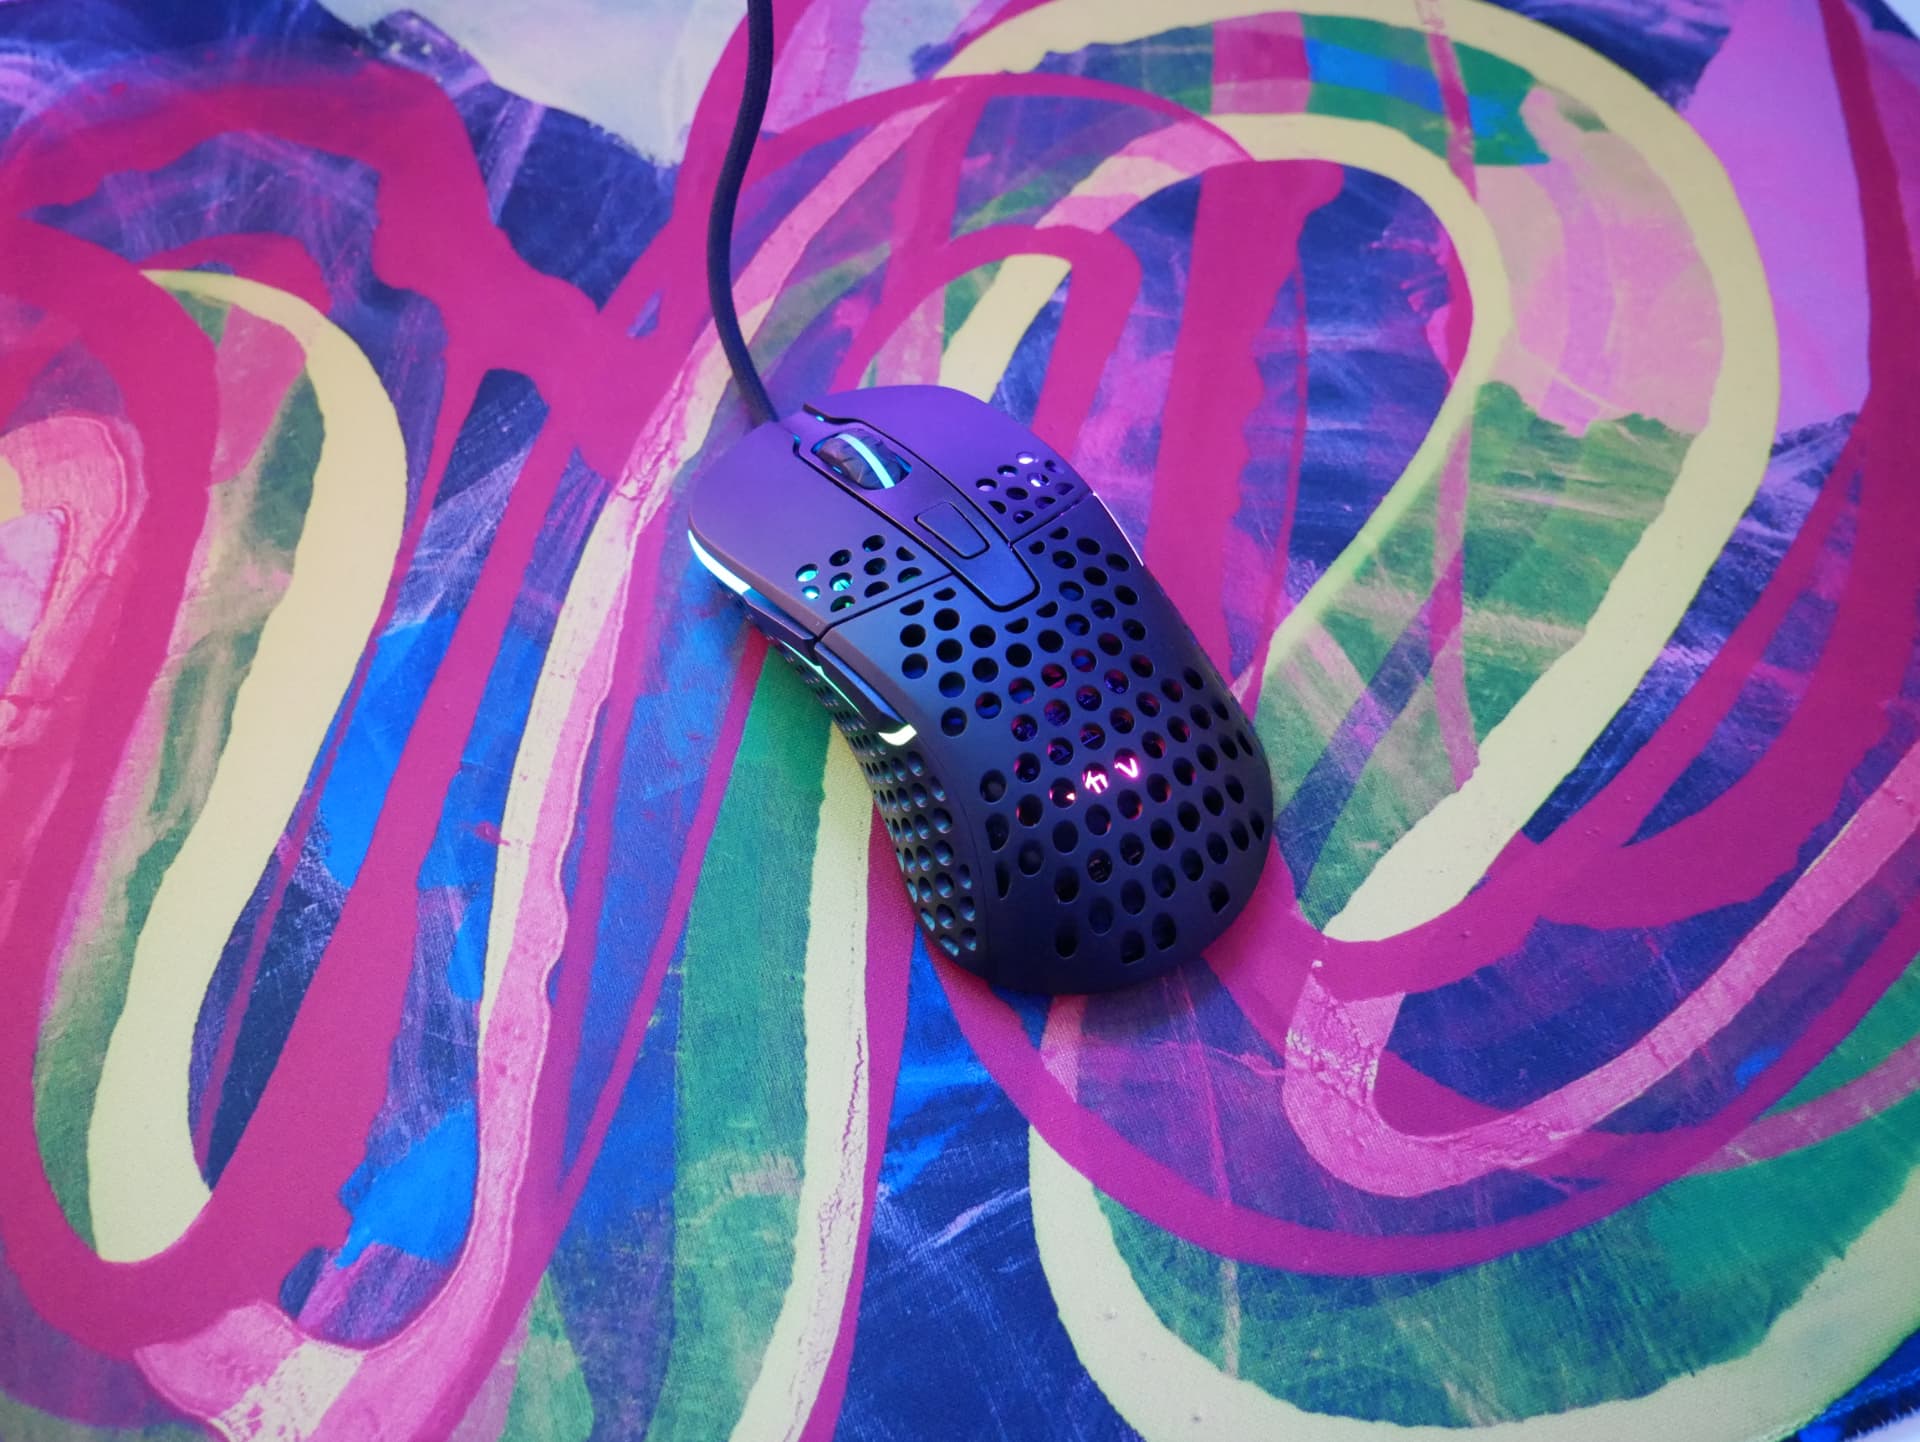 Xtrfy Gp4 レビュー アーティスティックなデザインが目を惹く 5色展開のゲーミングマウスパッド Dpqp